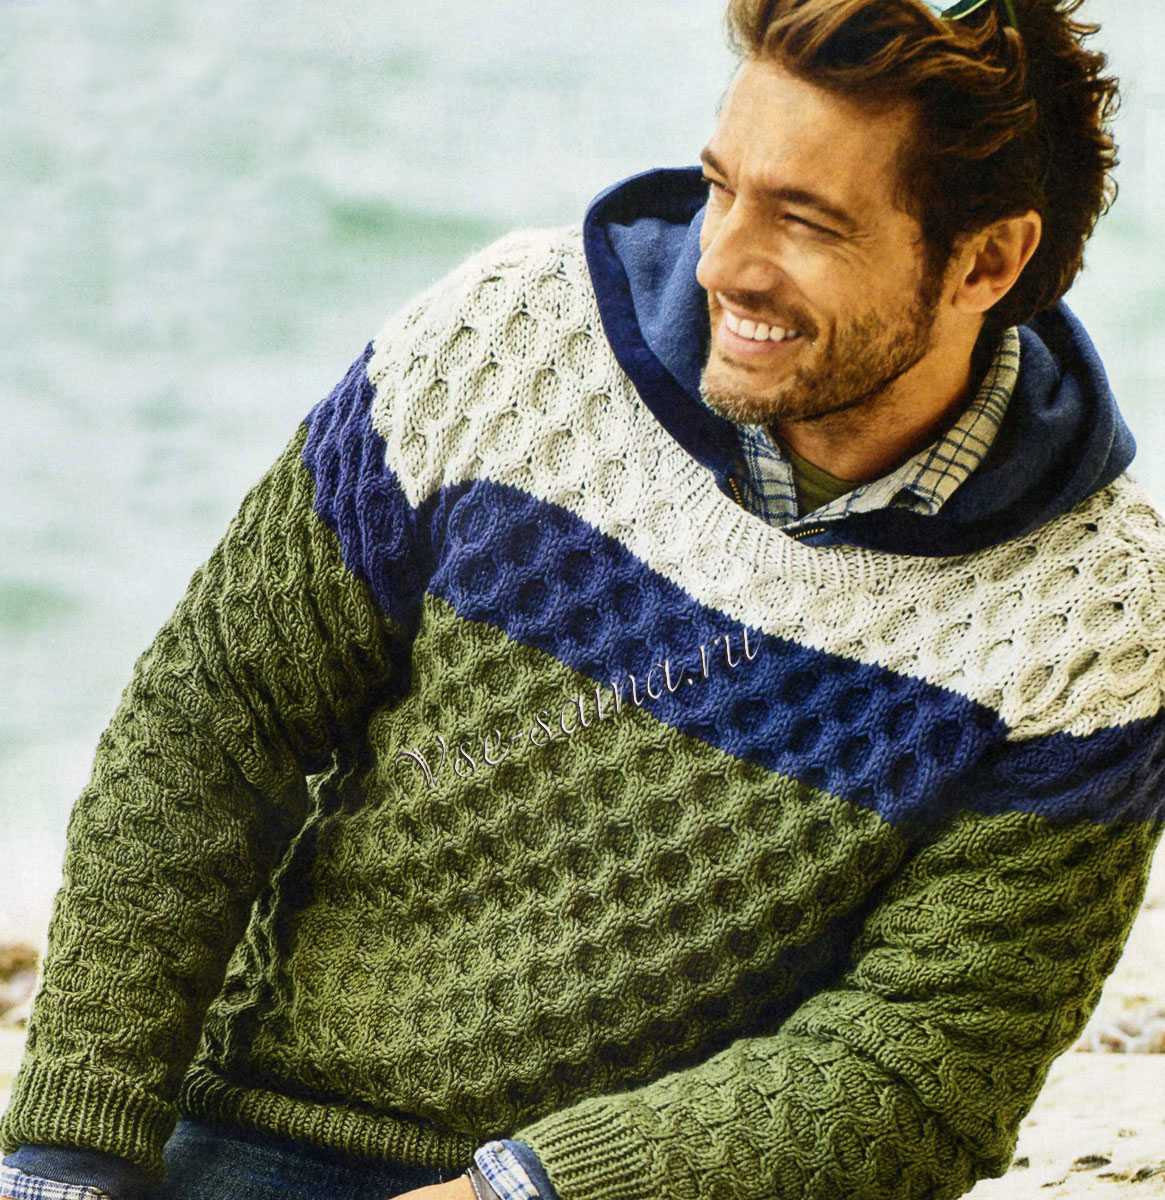 Для начинающих вязальщиц — вязание мужских свитеров спицами с описанием и схемами